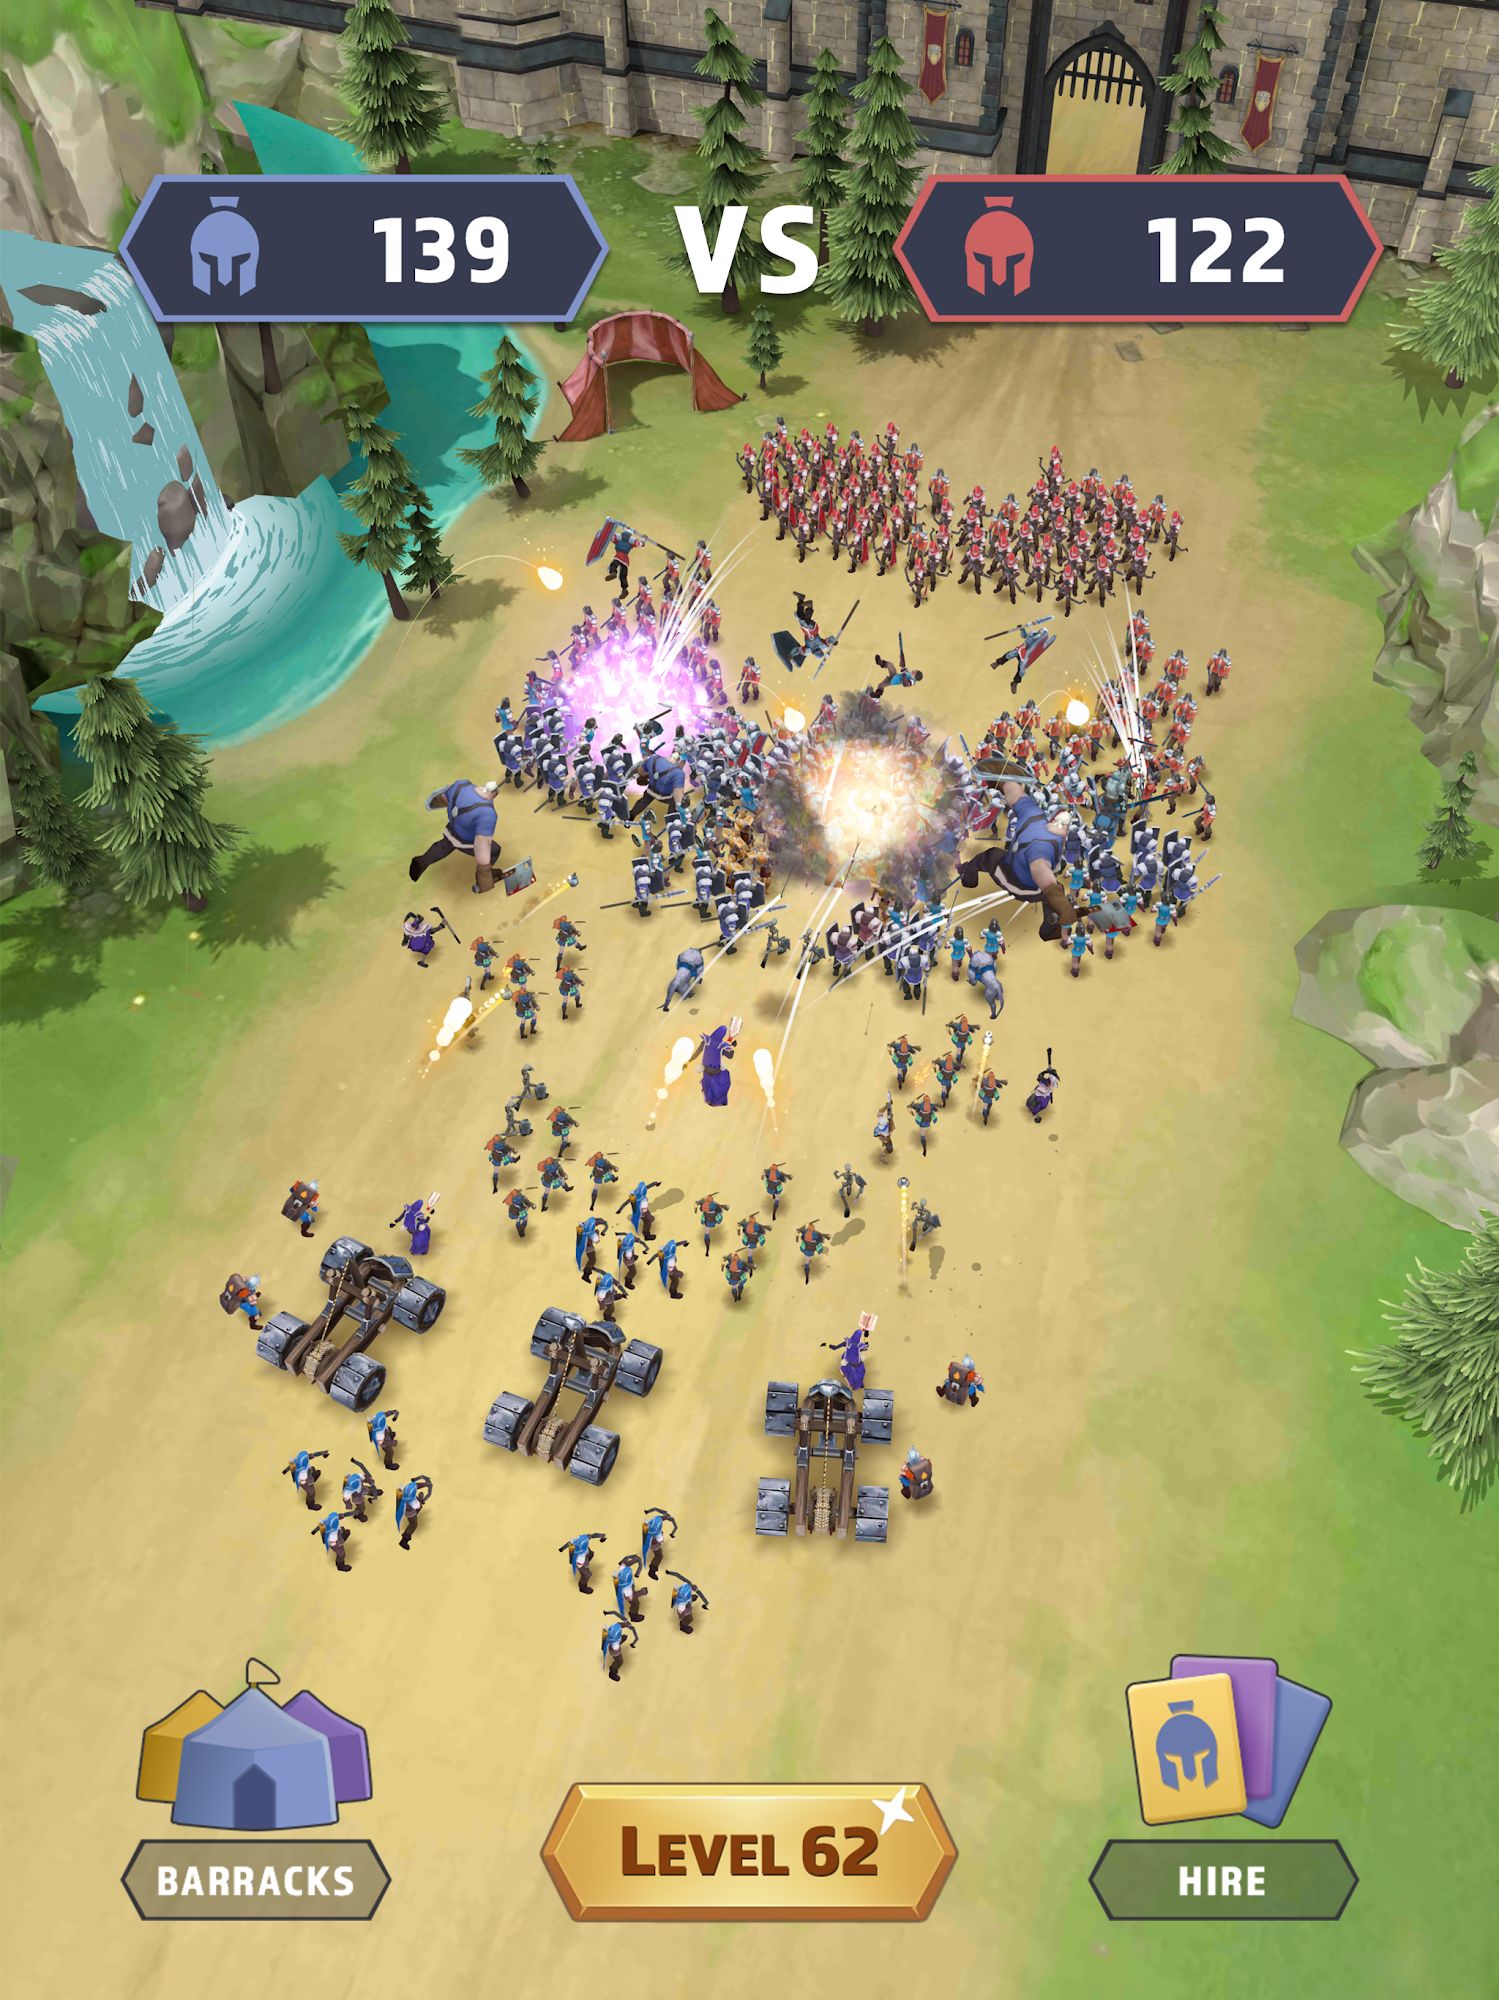 Kingdom Clash - Battle Sim